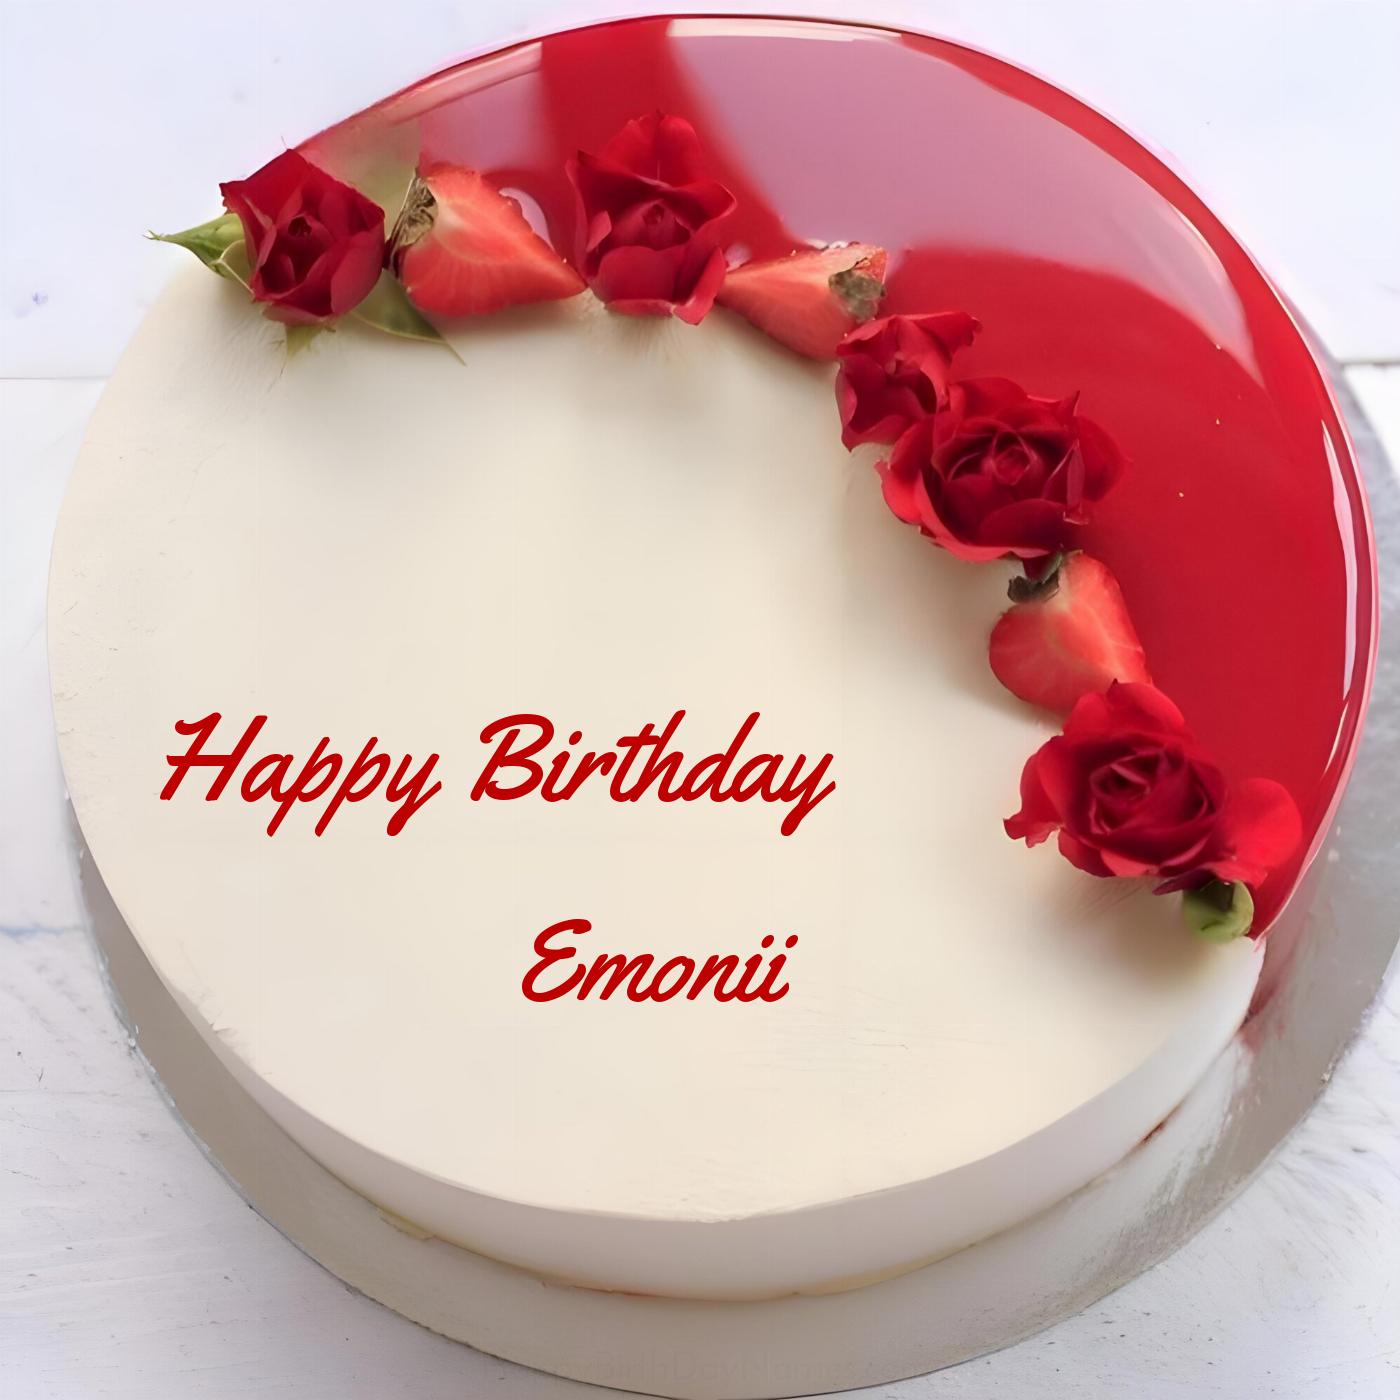 Happy Birthday Emonii Rose Straberry Red Cake